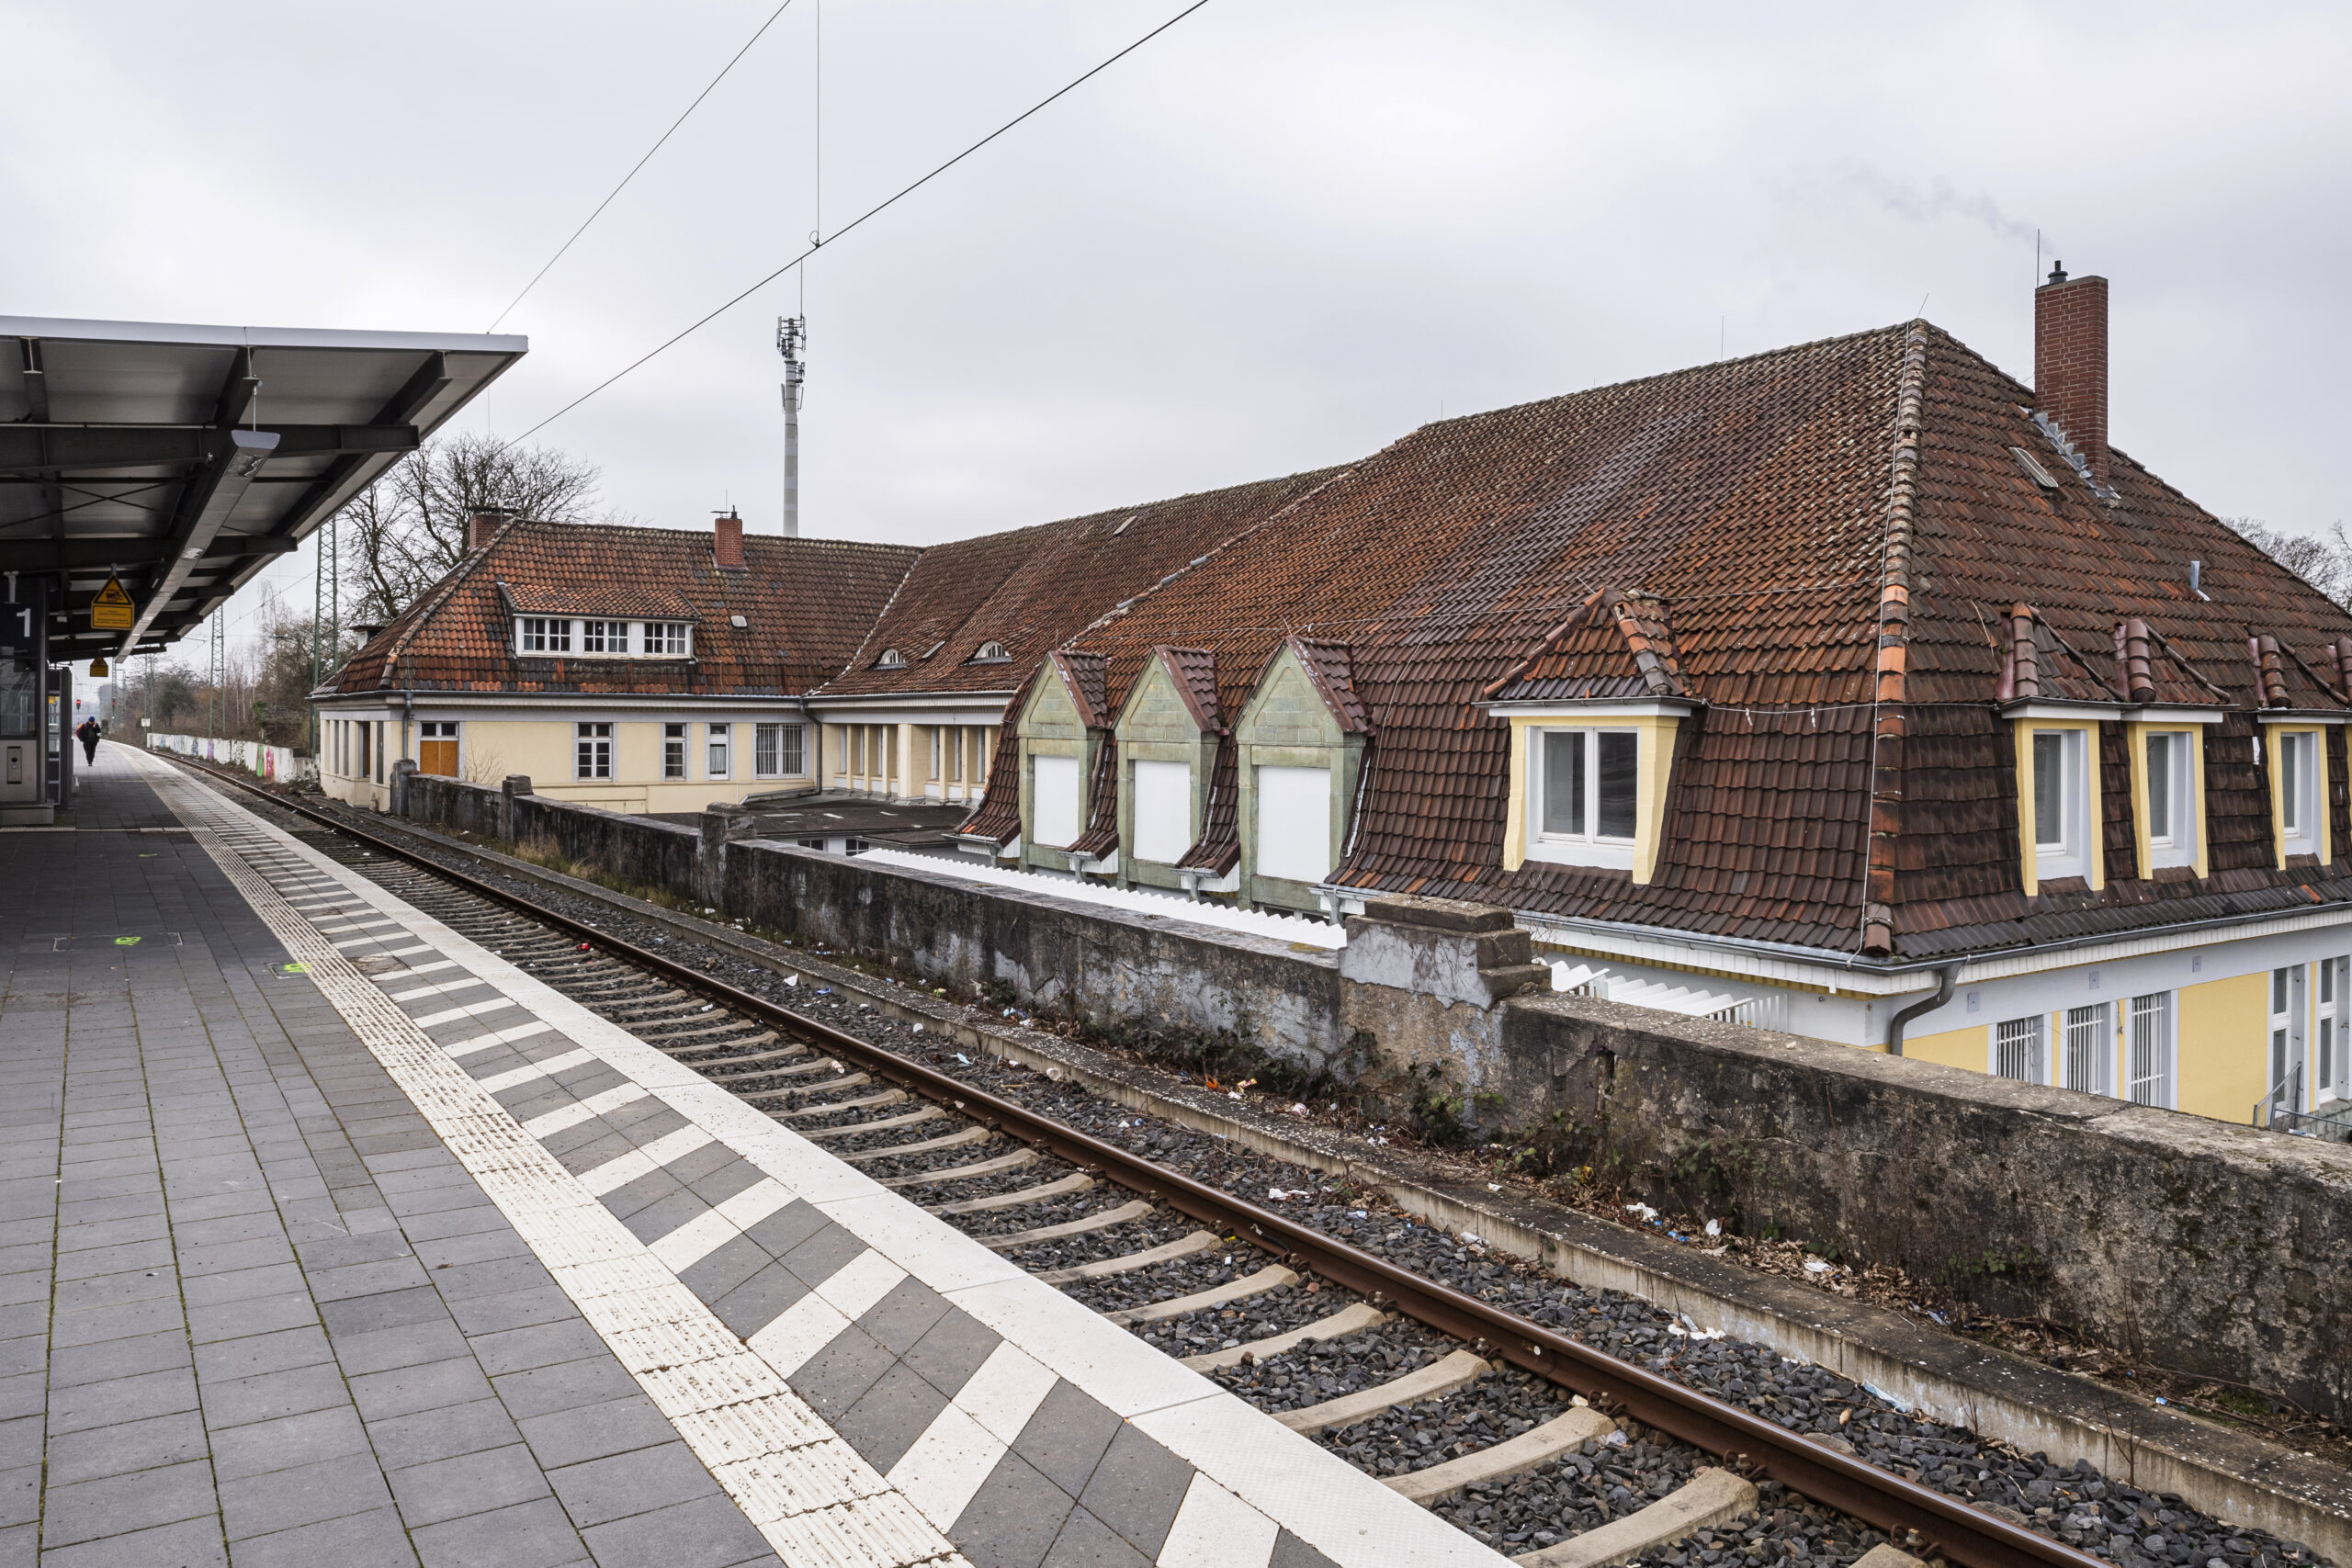 Schöner ankommen in NRW: Bahnhof Ahlen - Bahnsteig